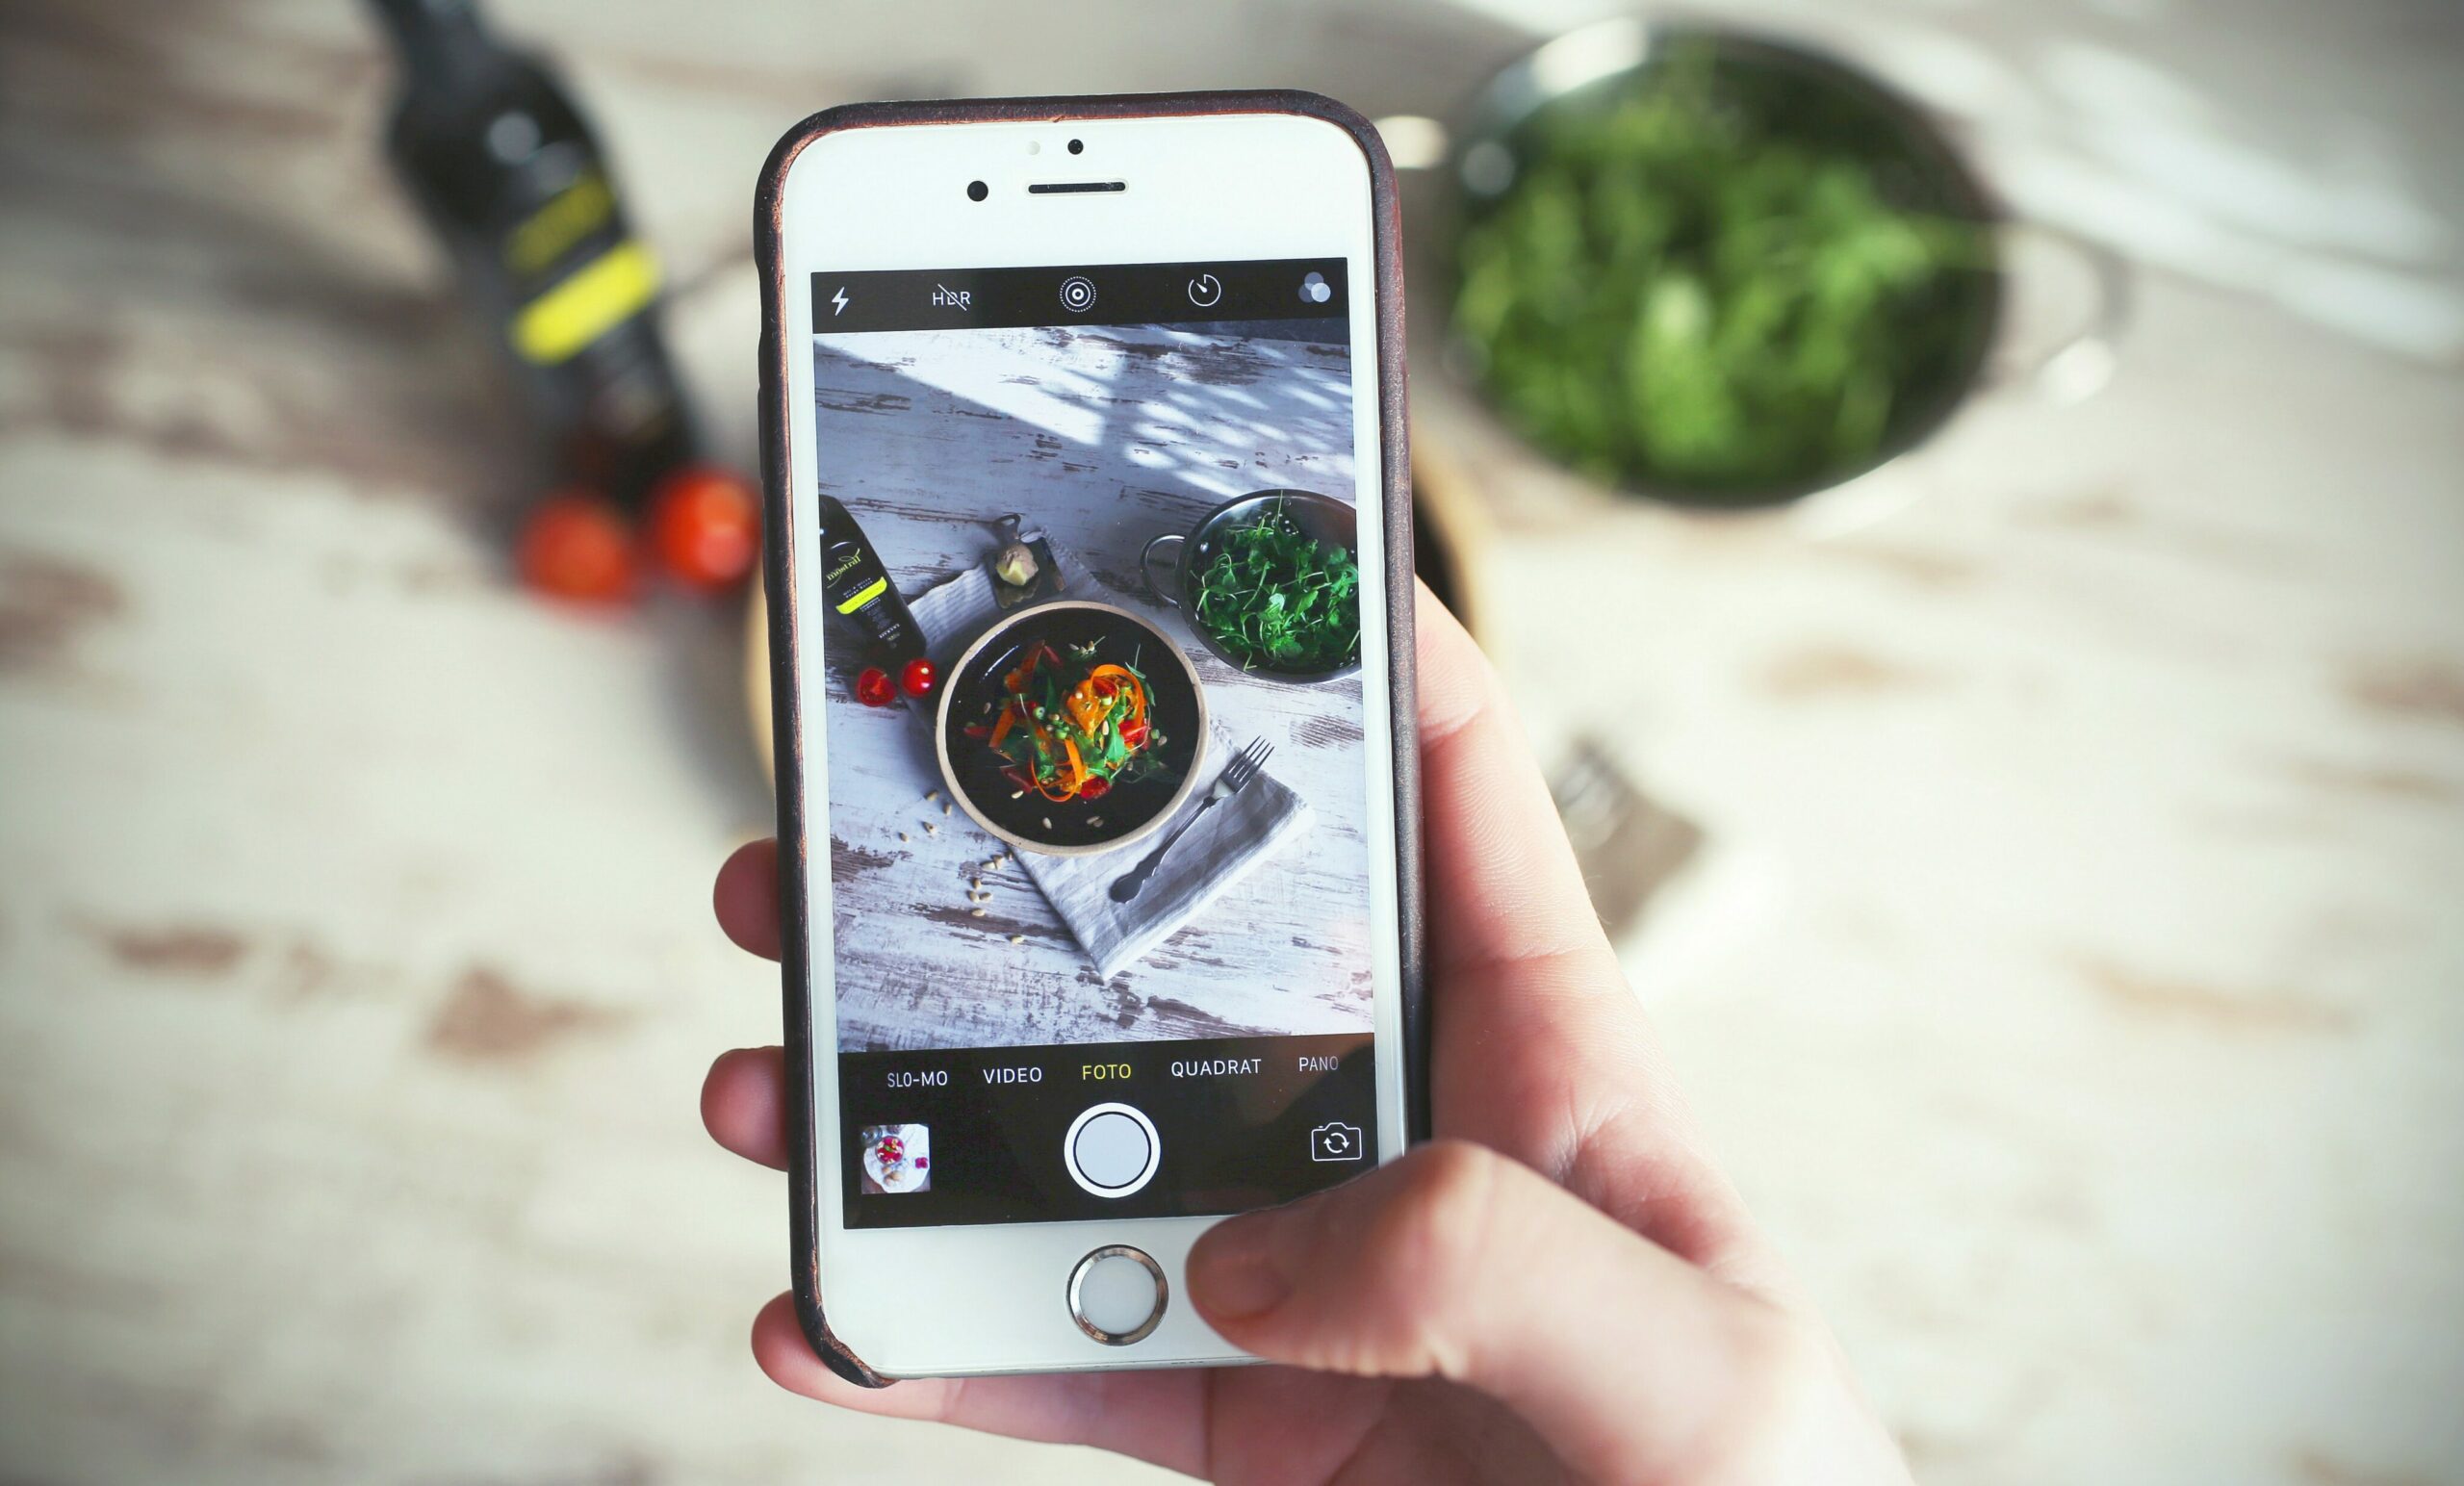 Mahlzeiten tracken: Ein Handybildschirm zeigt im Fotomodus die dahinter angerichtete Mahlzeit.